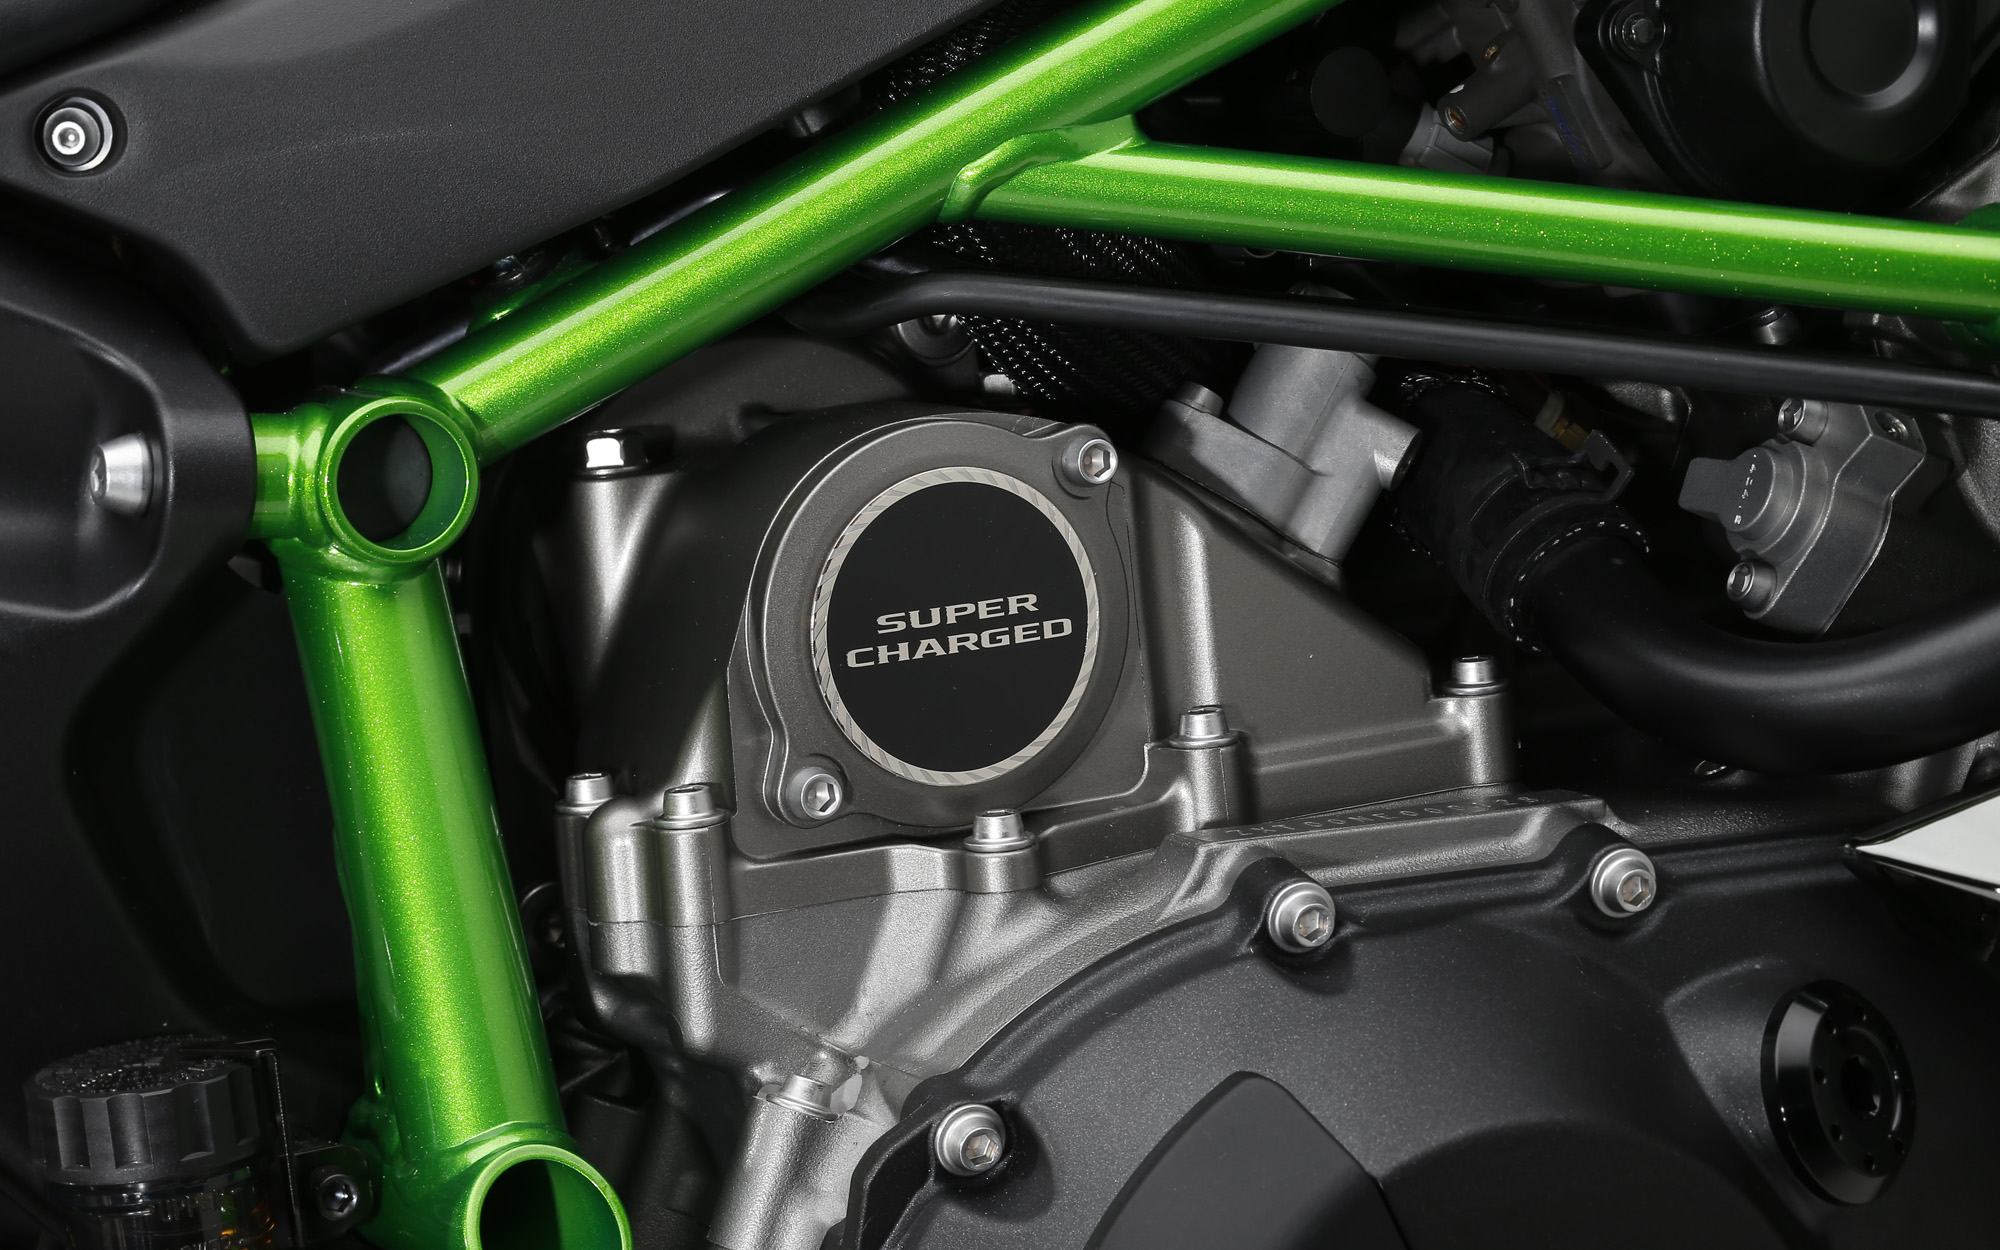 2014-Kawasaki-Ninja-H2R-SuperCharged-Engine-Official-Image.jpg